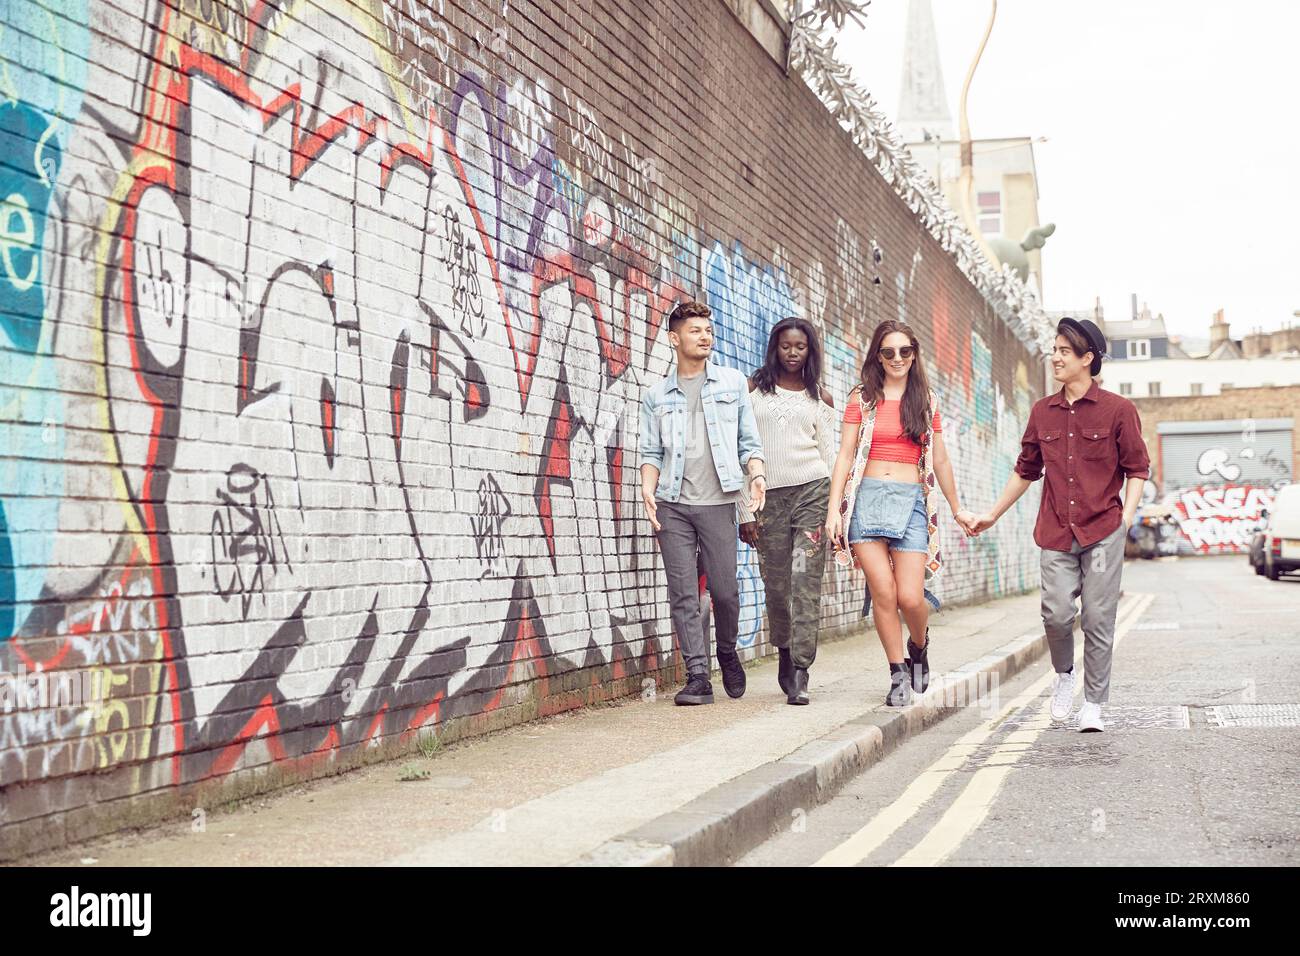 Teenage friends walking together Banque D'Images